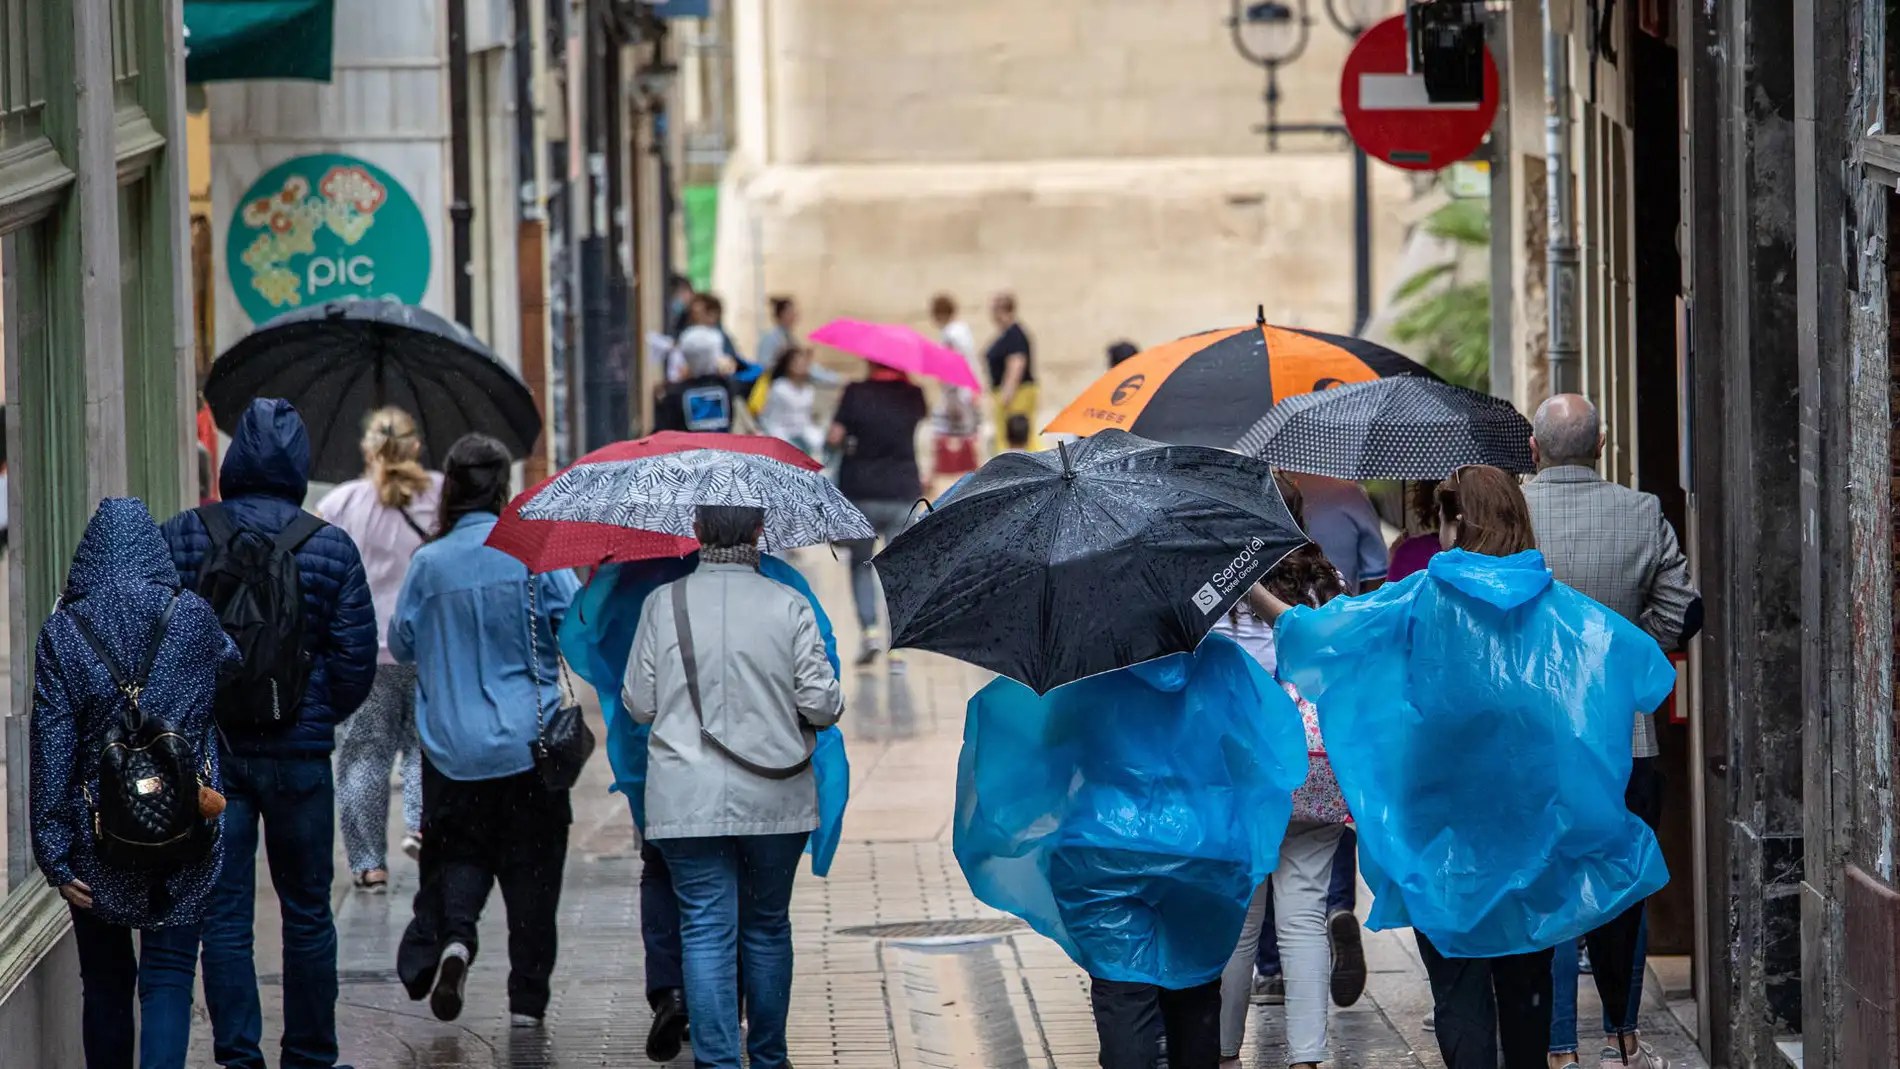 Turistas y transeúntes caminan bajo la lluvia en Logroño.